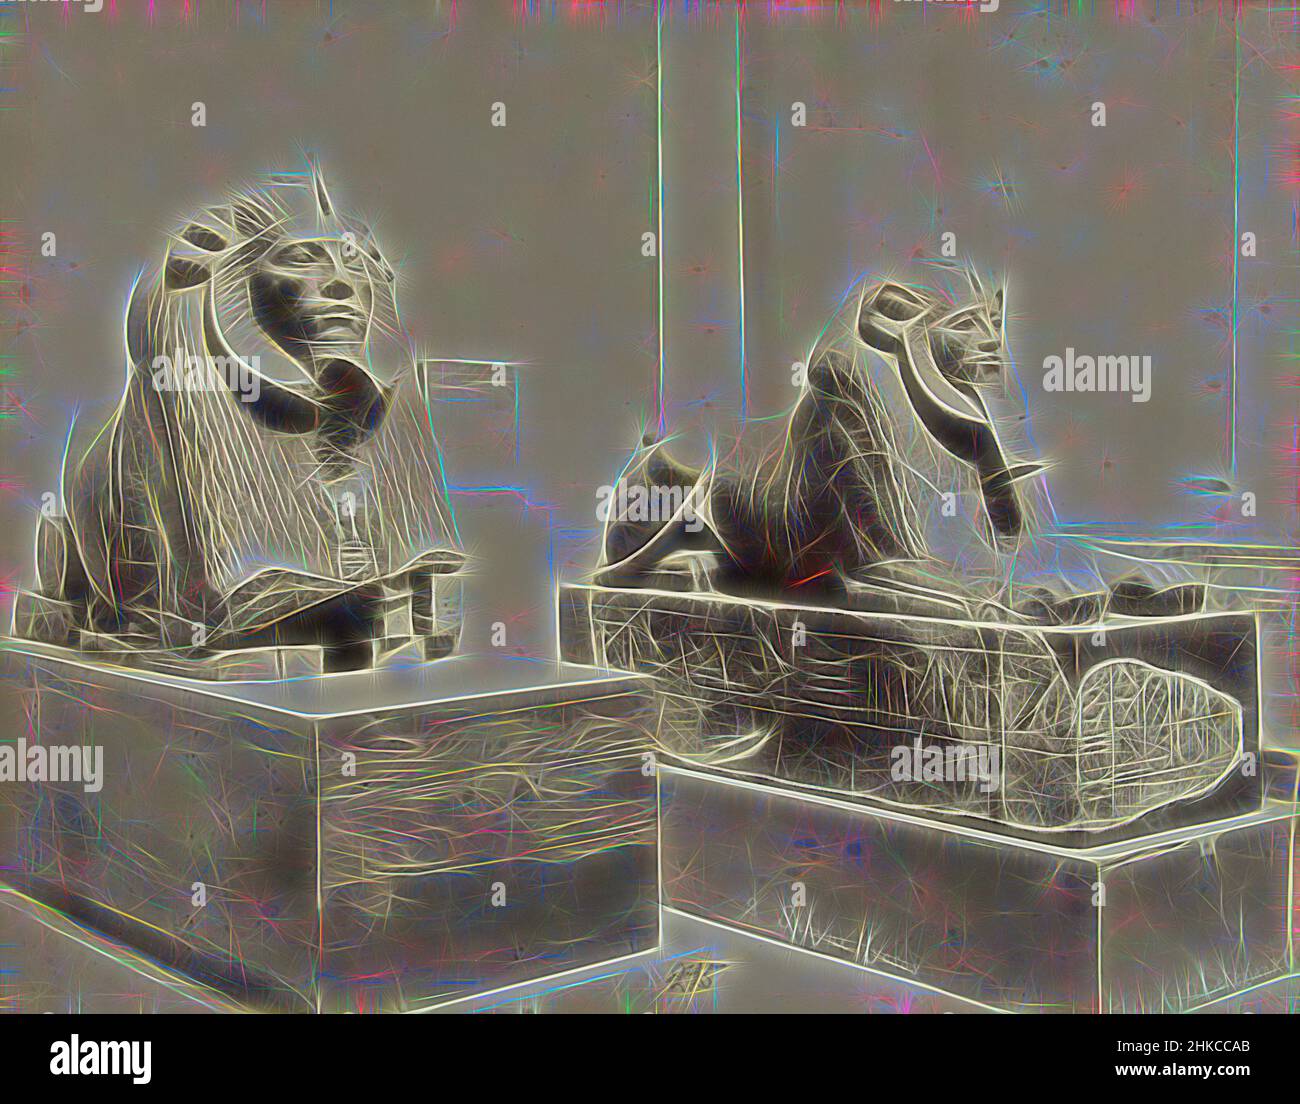 Inspiré par deux sphinx sur un block2. Sphynx Hycsos, G. Lekegian & Co., Egypte, c. 1880 - c. 1900, imprimé albumine, hauteur 22 mm × largeur 277 mm hauteur 277 mm × largeur 367 mm, repensé par Artotop. L'art classique réinventé avec une touche moderne. Conception de lumière chaleureuse et gaie, de luminosité et de rayonnement de lumière. La photographie s'inspire du surréalisme et du futurisme, embrassant l'énergie dynamique de la technologie moderne, du mouvement, de la vitesse et révolutionne la culture Banque D'Images